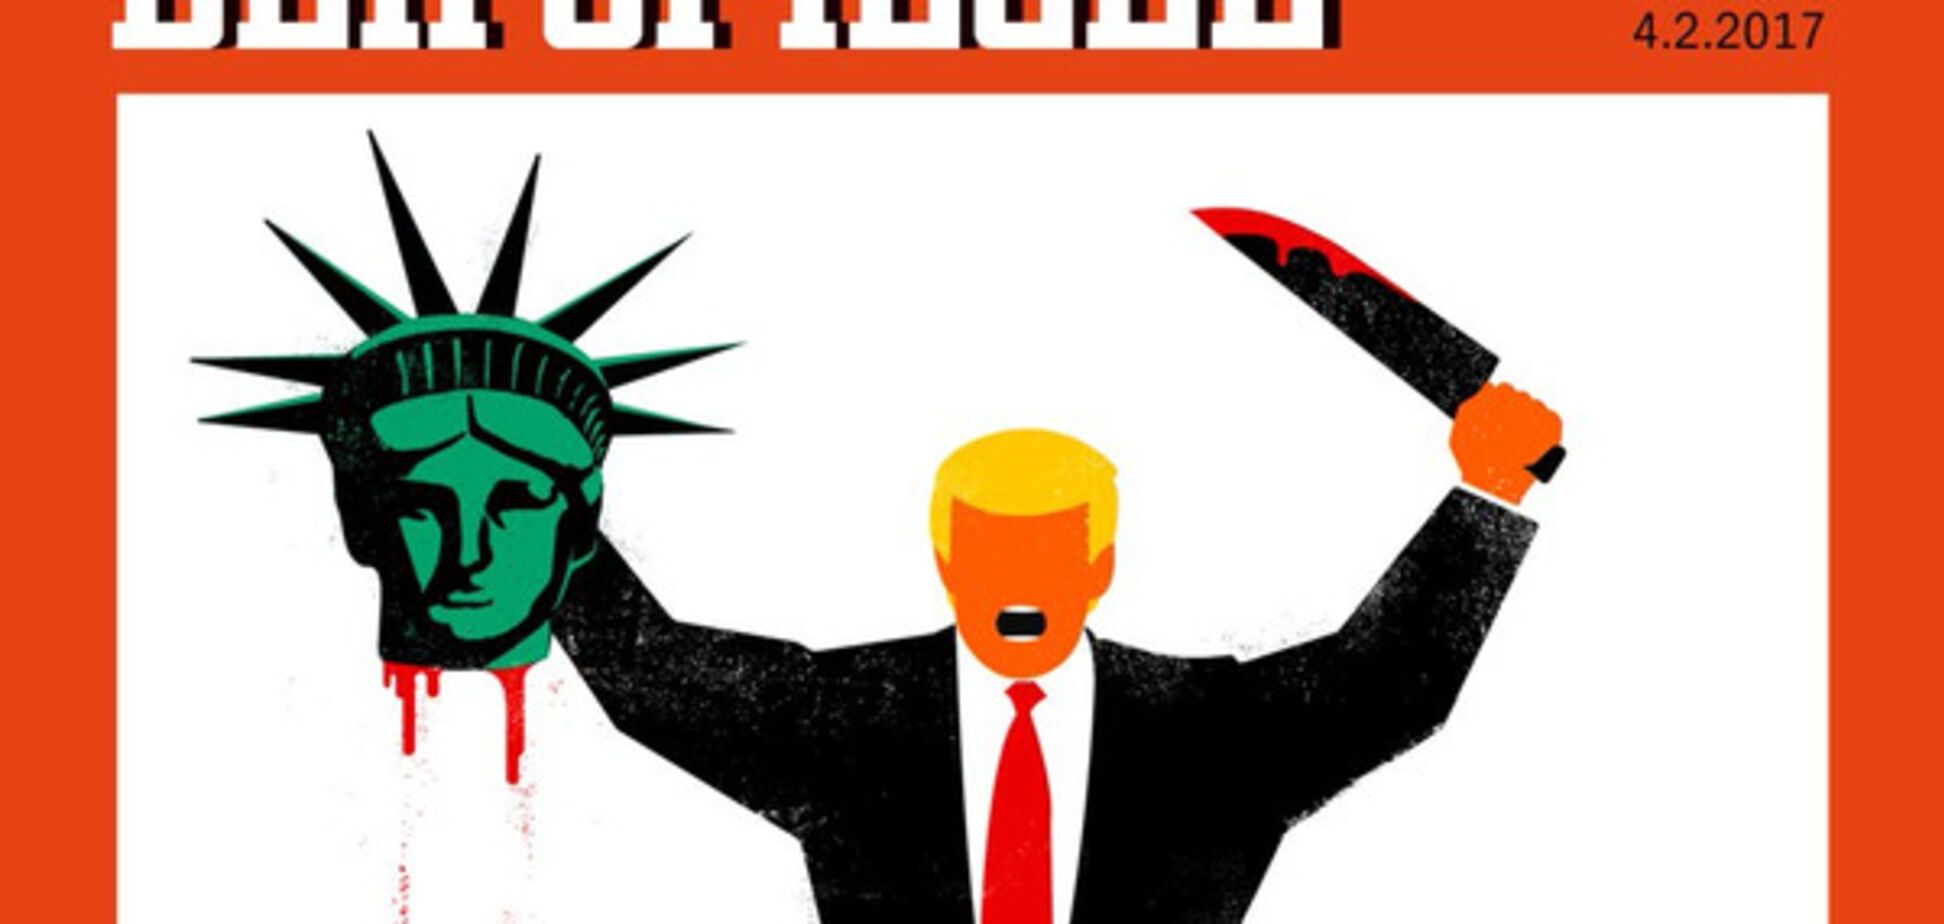 Обложка Spiegel с Трампом